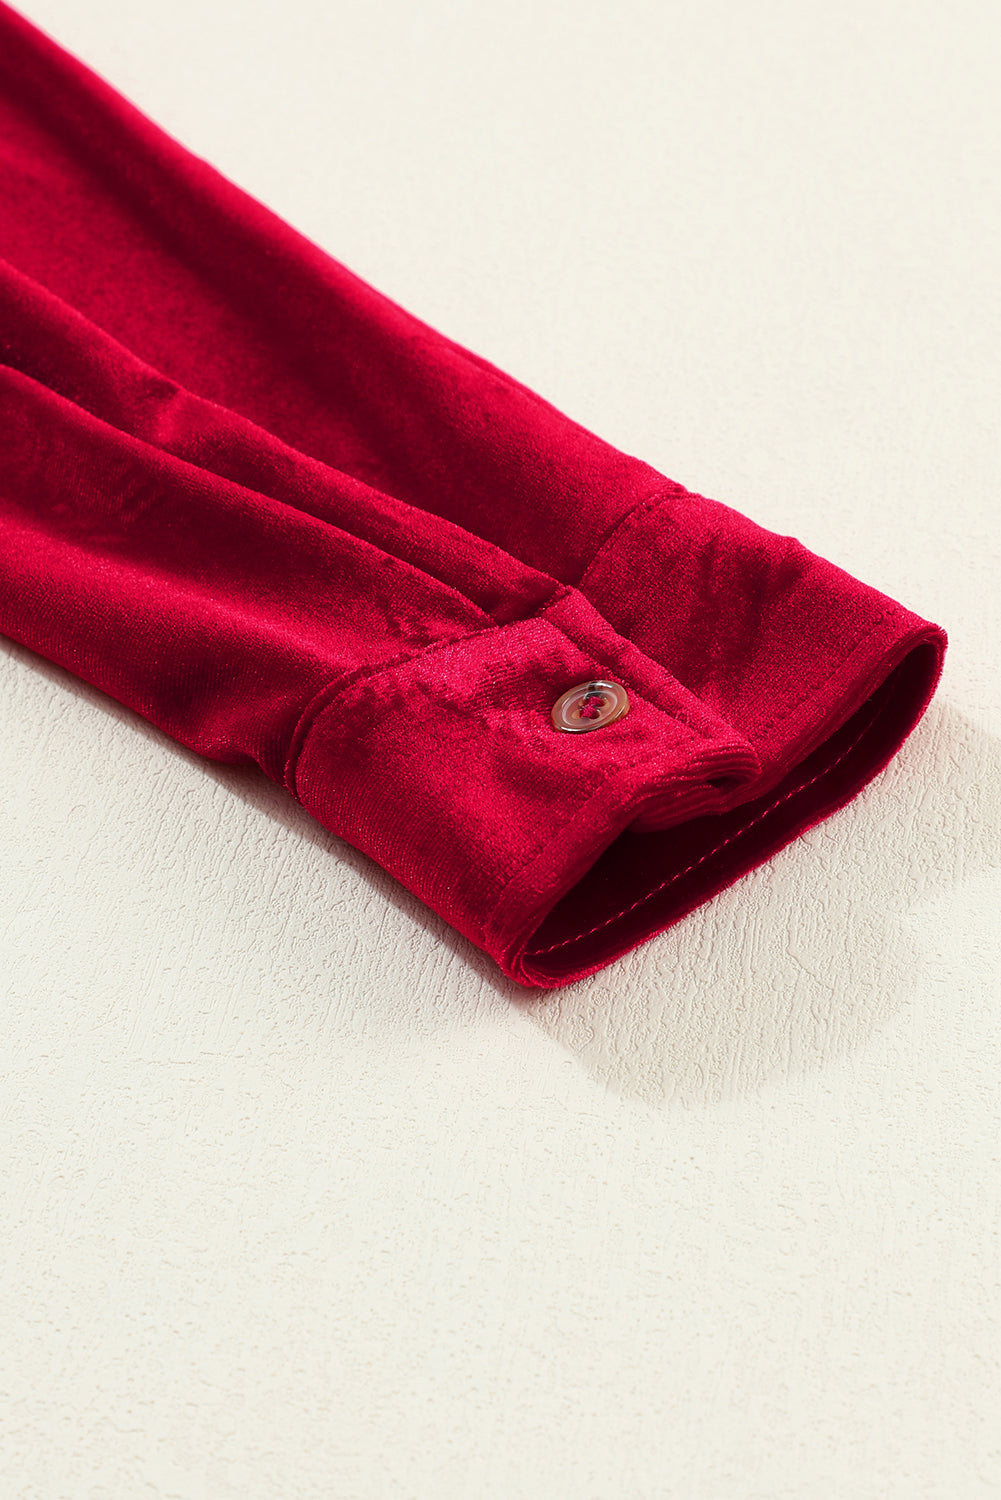 Ognjeno rdeča obleka z dolgimi rokavi in ​​žametnimi gumbi